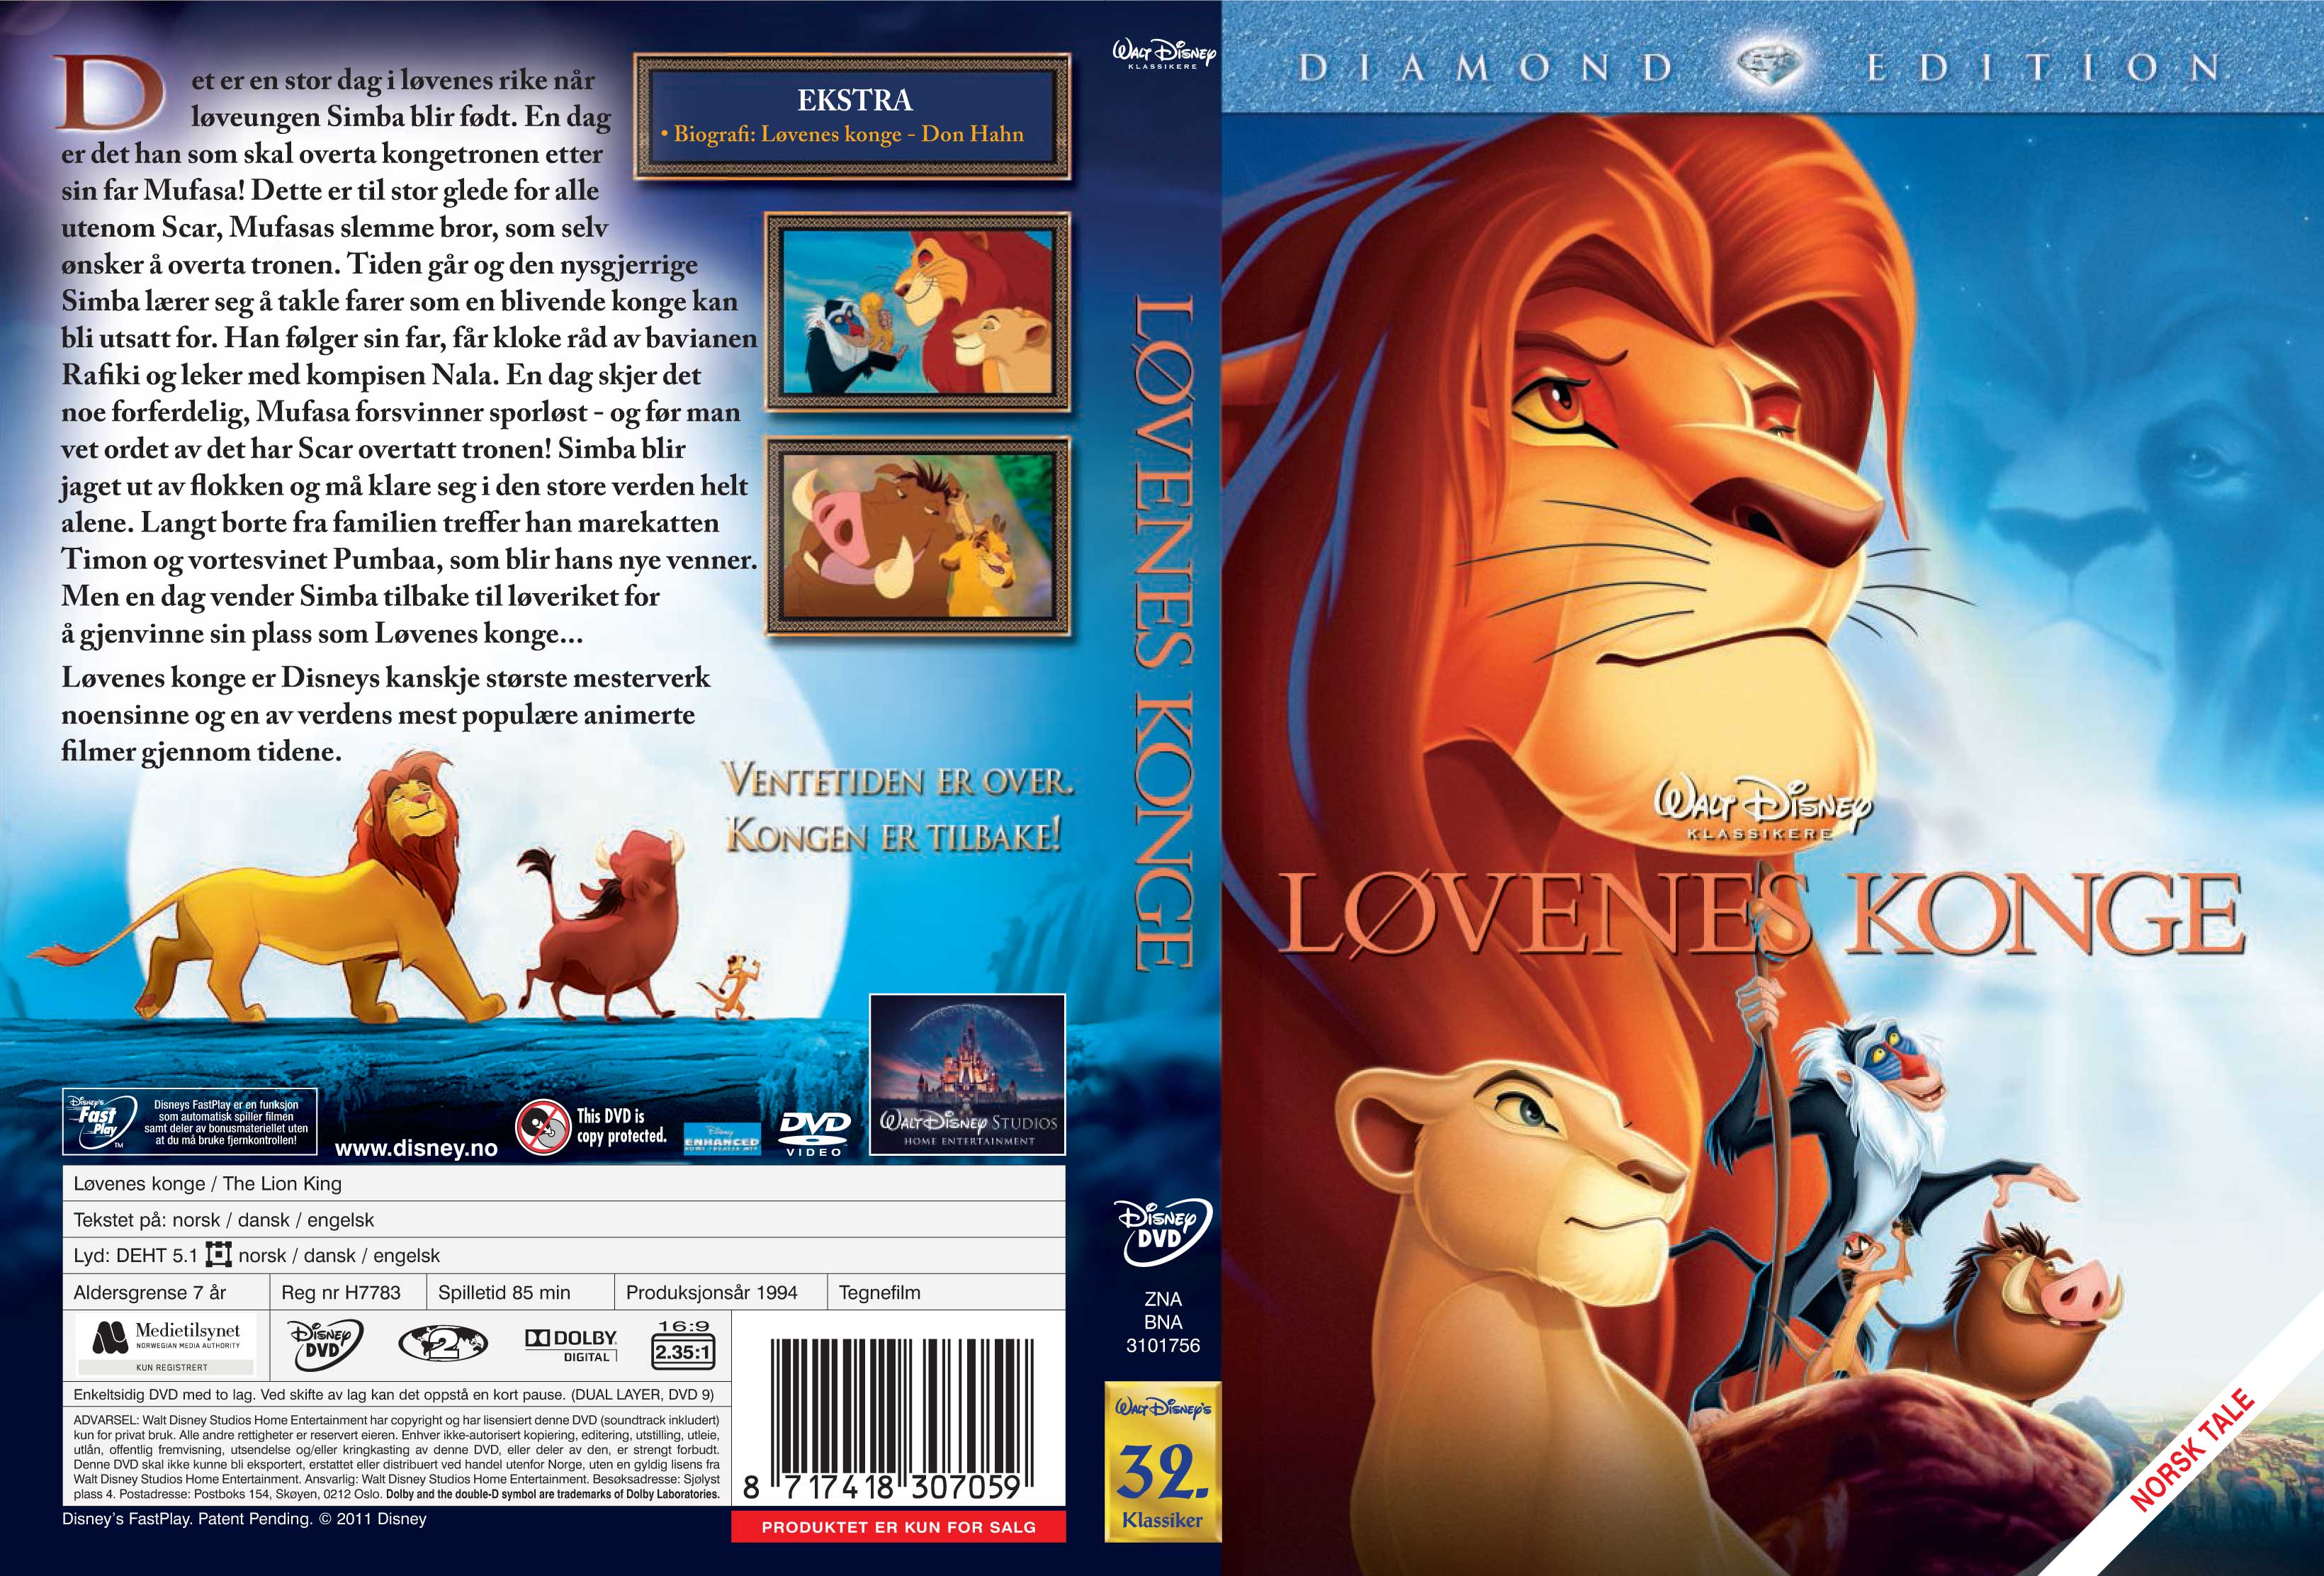 Lion King DVD Cover Art